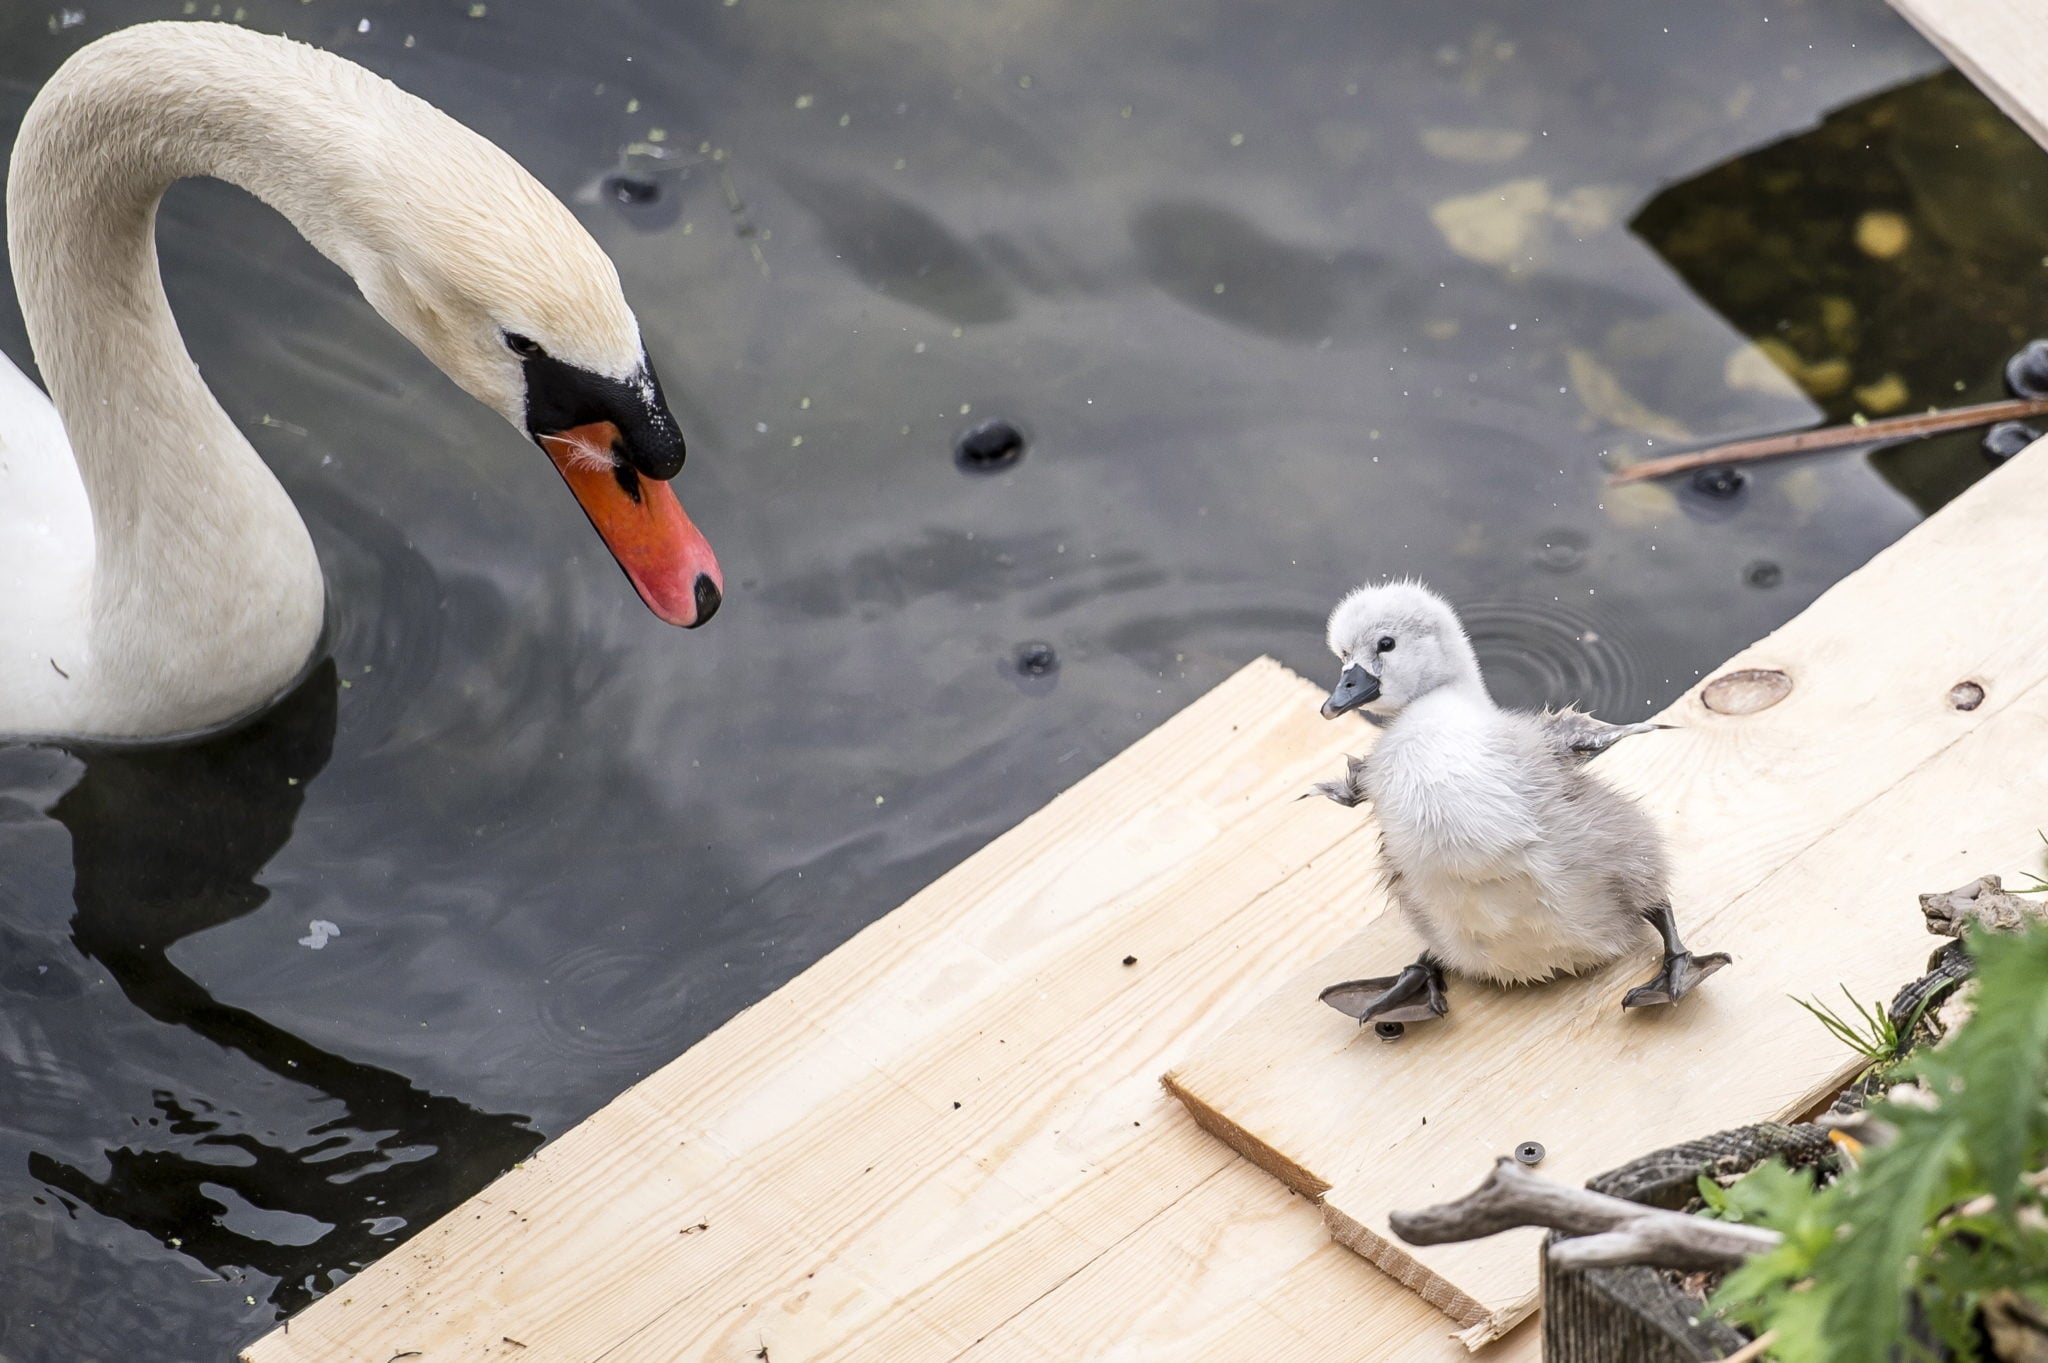 Dania: łabędź i inne ptaki w jeziorze koło mostu Królowej Luizy w Kopenhadze. Gniazdo zostało częściowo zrobione ze śmieci z jeziora, teraz jaja się wykluły, a małe cygnetki wkrótce będą łabędziami, fot: Mads Claus Rasmussen, PAP/EPA 